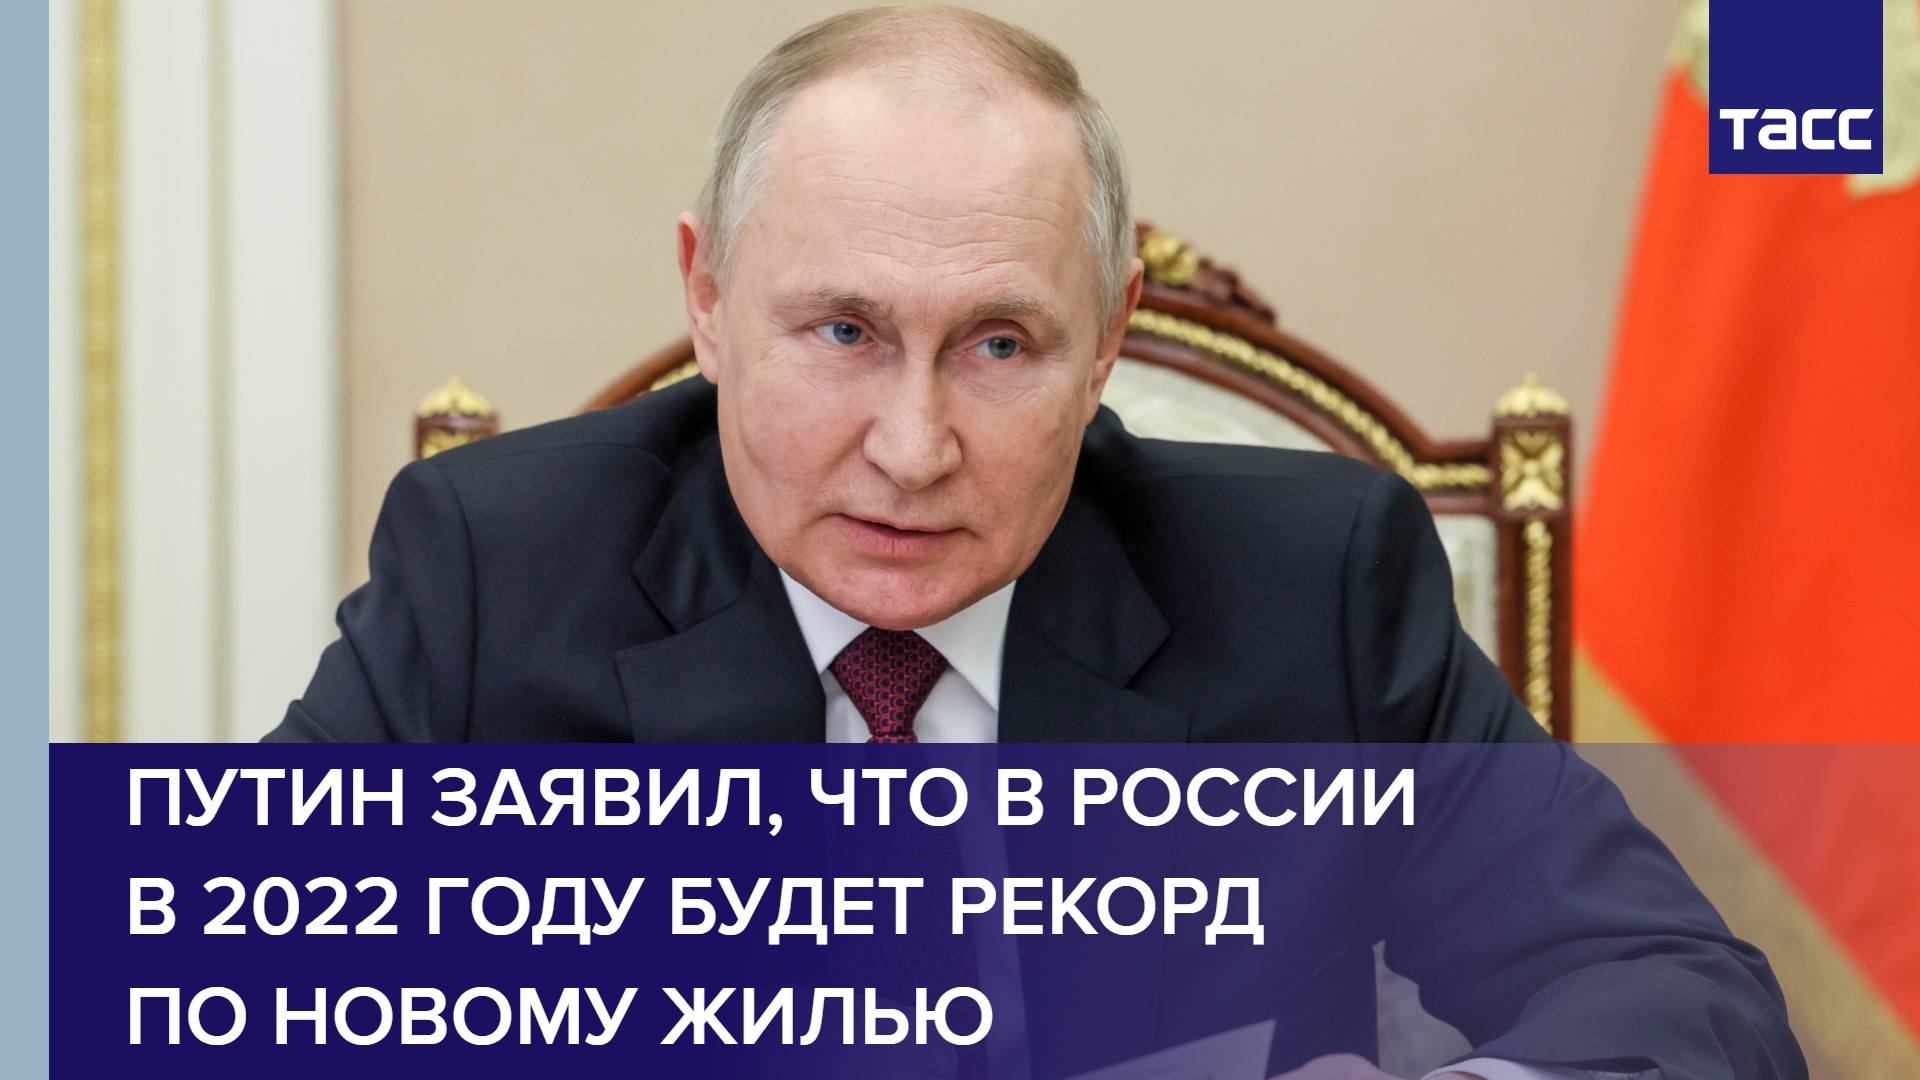 Путин заявил, что в России в 2022 году будет рекорд по новому жилью